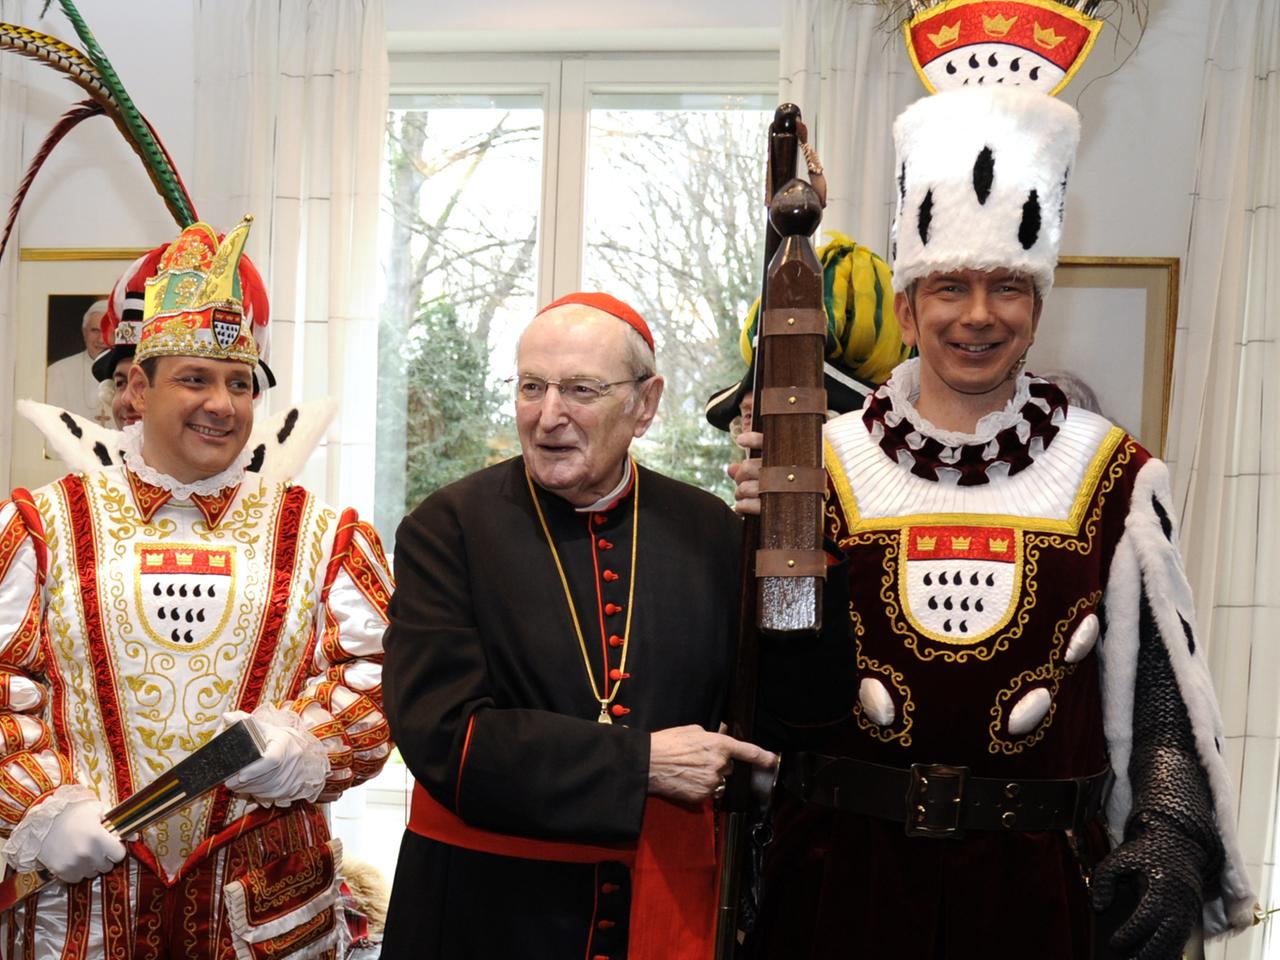 Joachim Kardinal Meisner (M.) beim Empfang des Kölner Dreigestirns der Karnevalssession 2014.